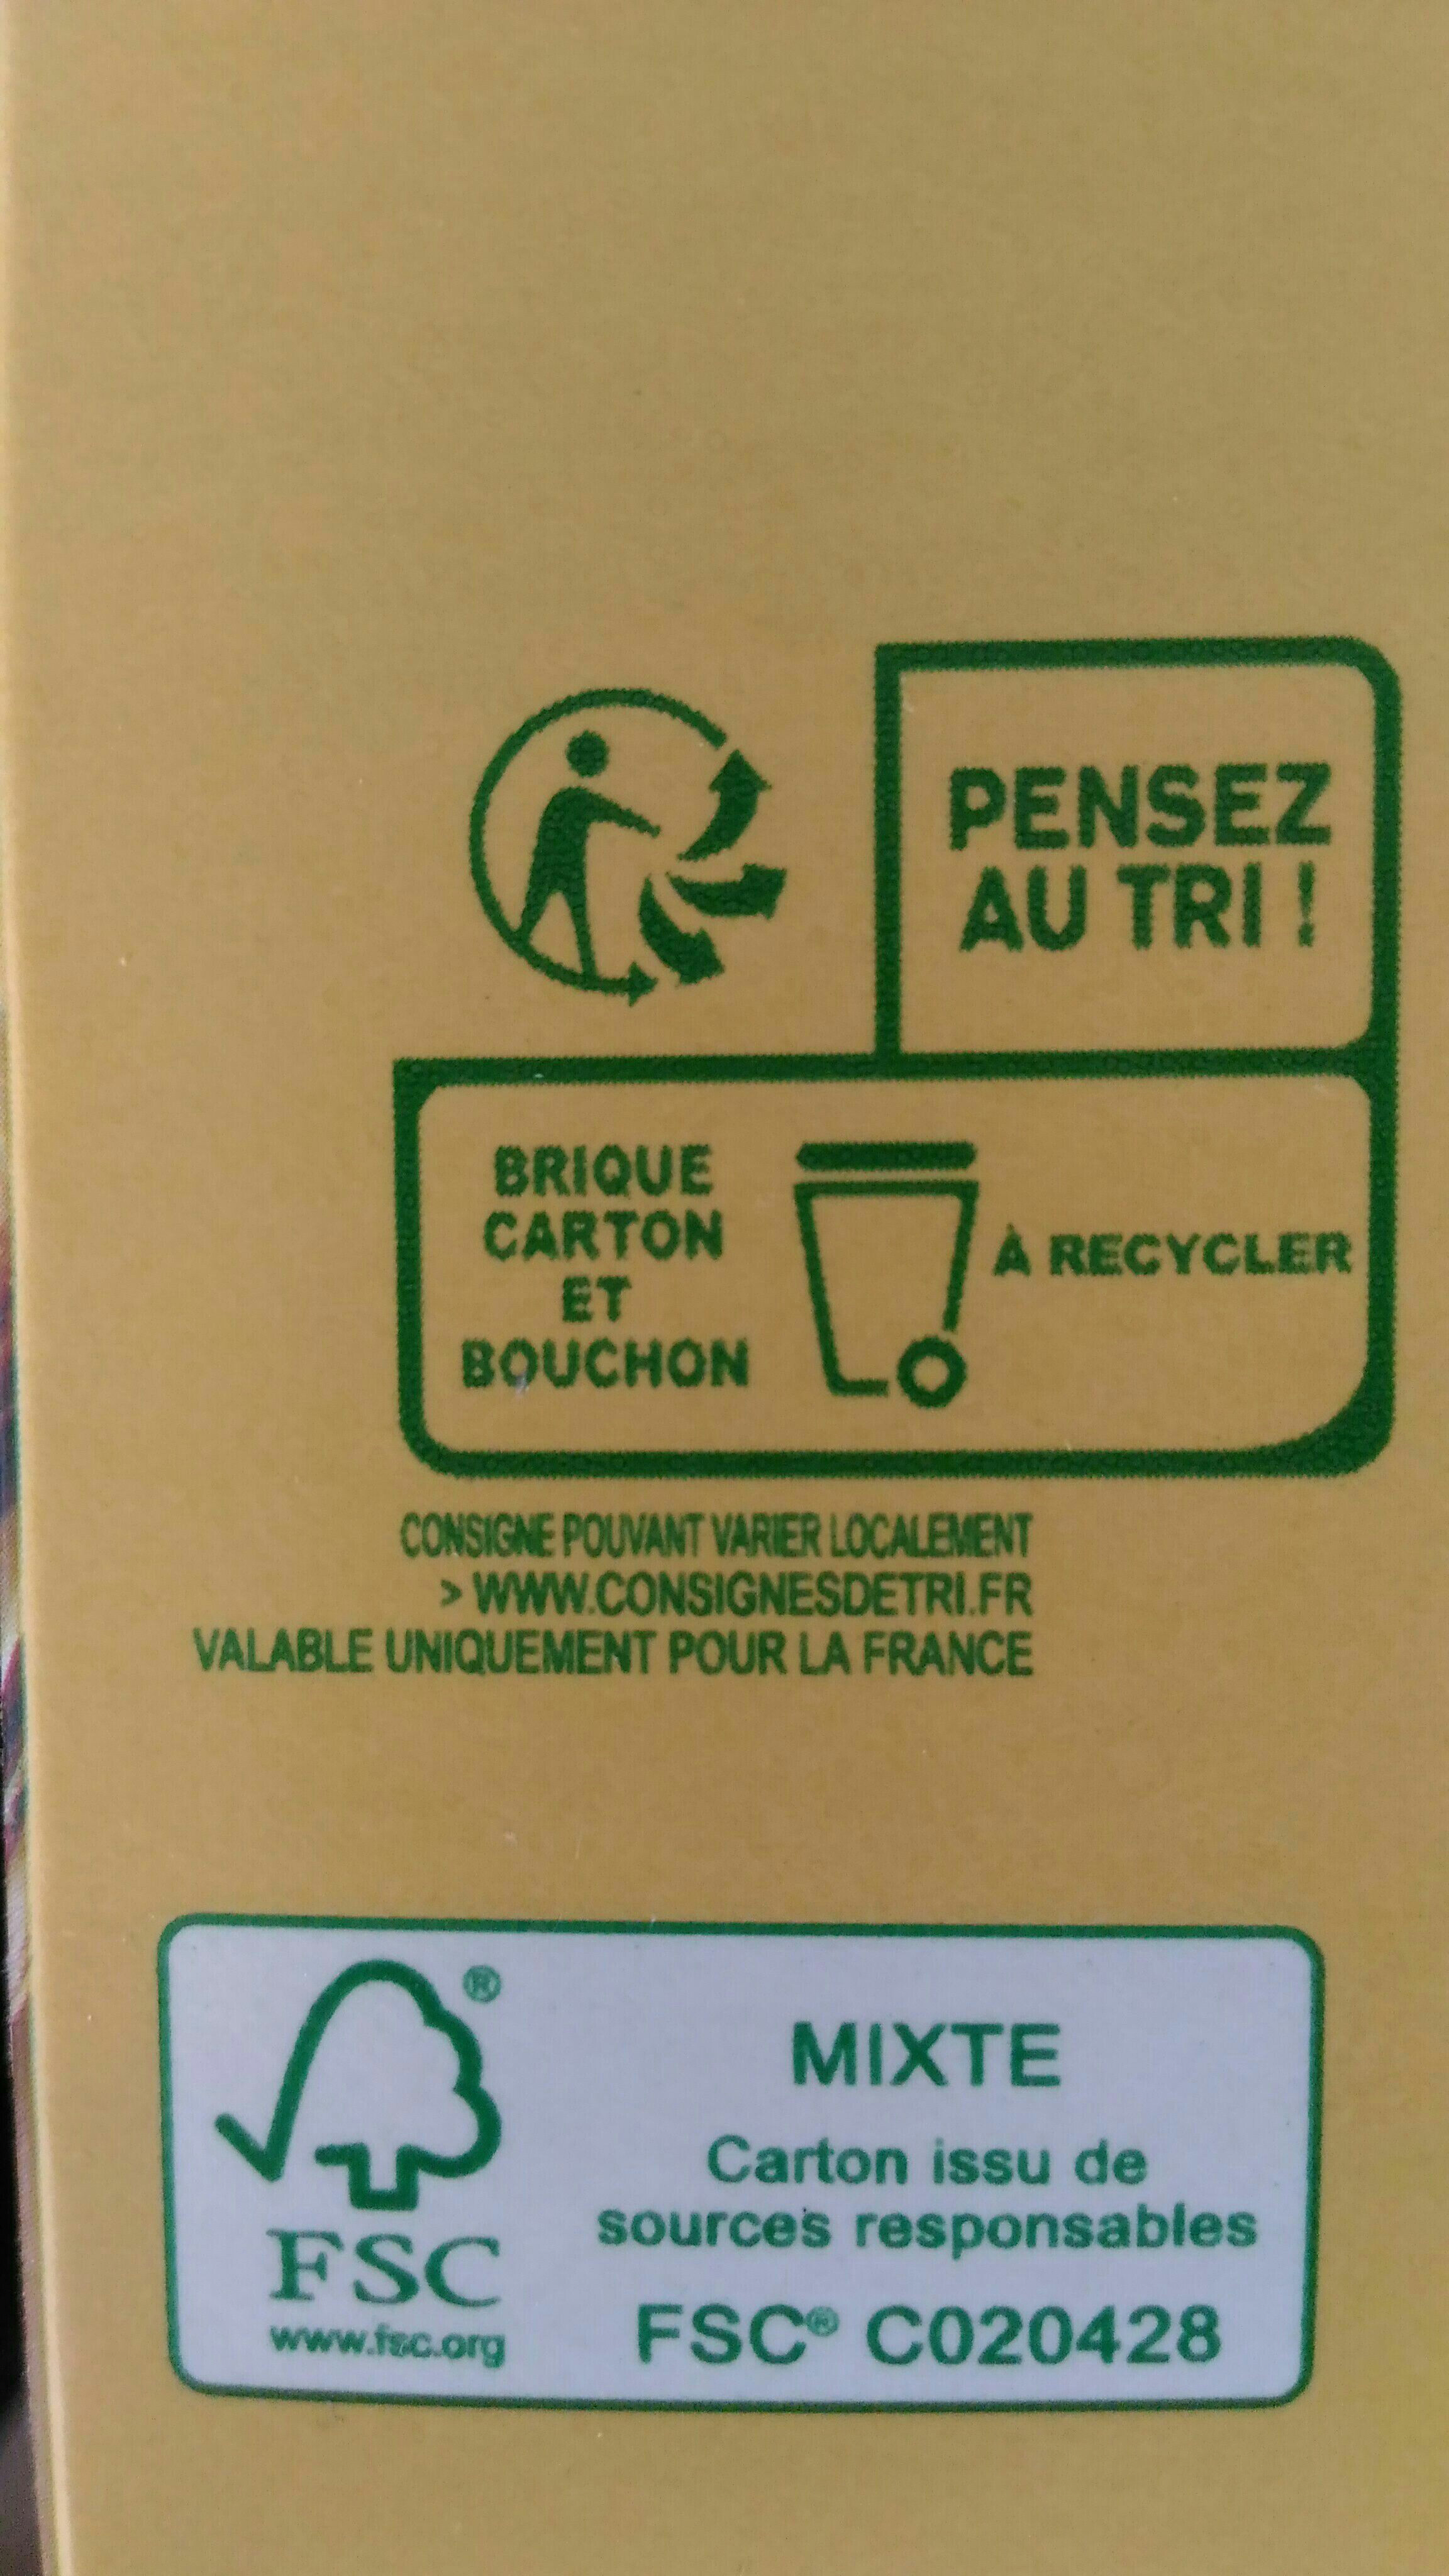 Boisson de Soja à la vanille, stérilisée UHT - Recycling instructions and/or packaging information - en